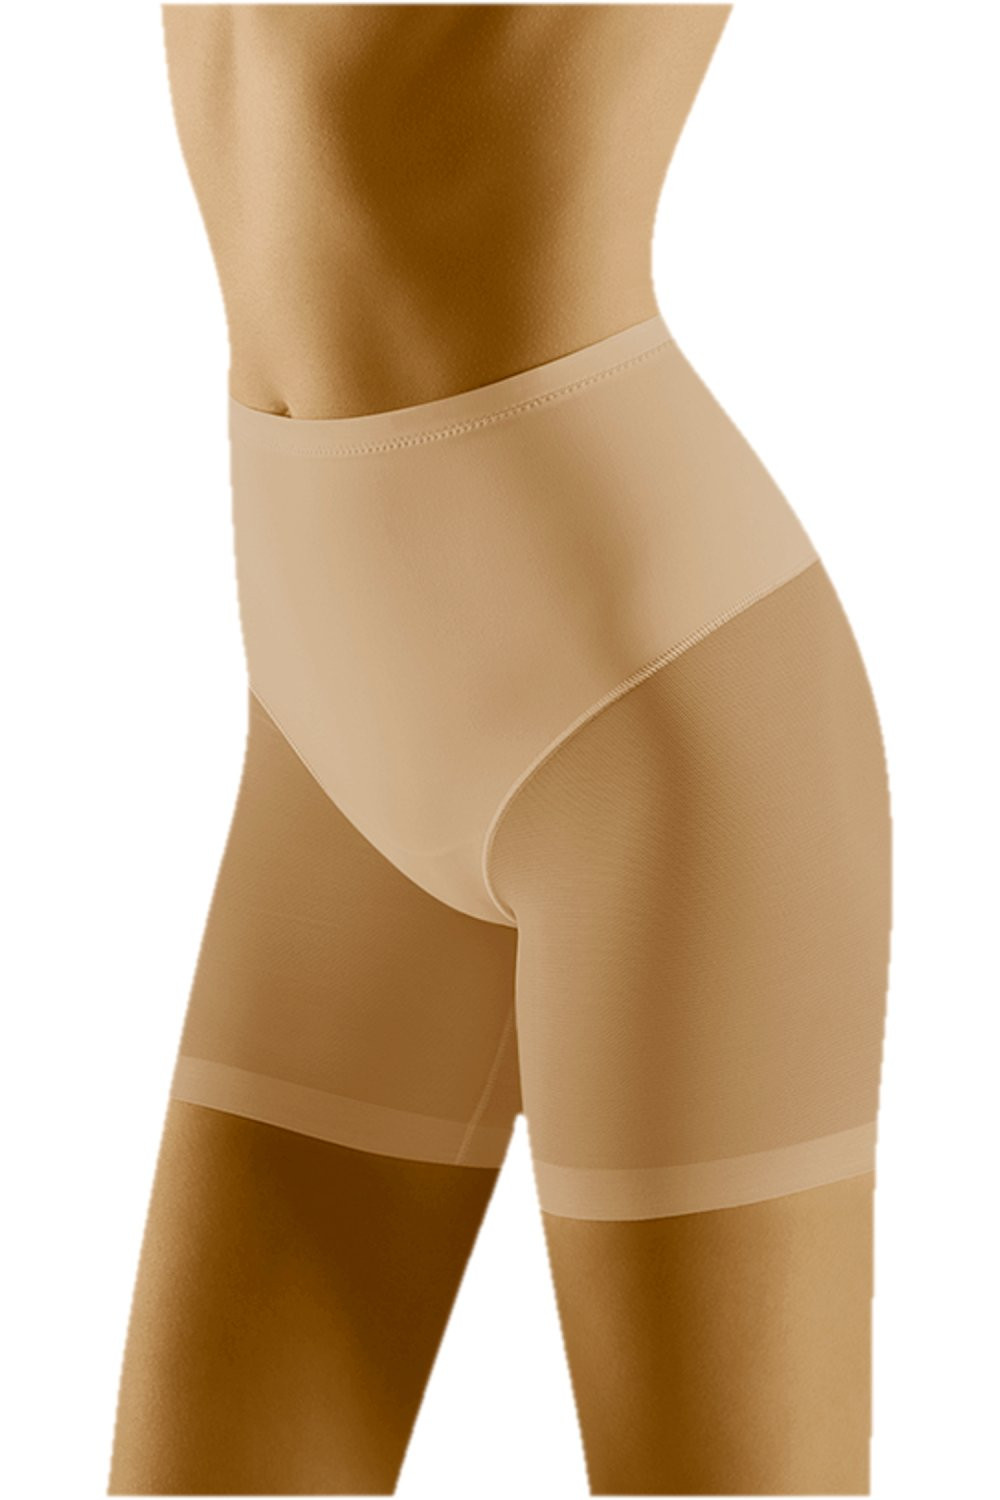 Stahovací kalhotky model 17180326 beige WOLBAR - Wol-Bar Barva: Béžová, Velikost: M